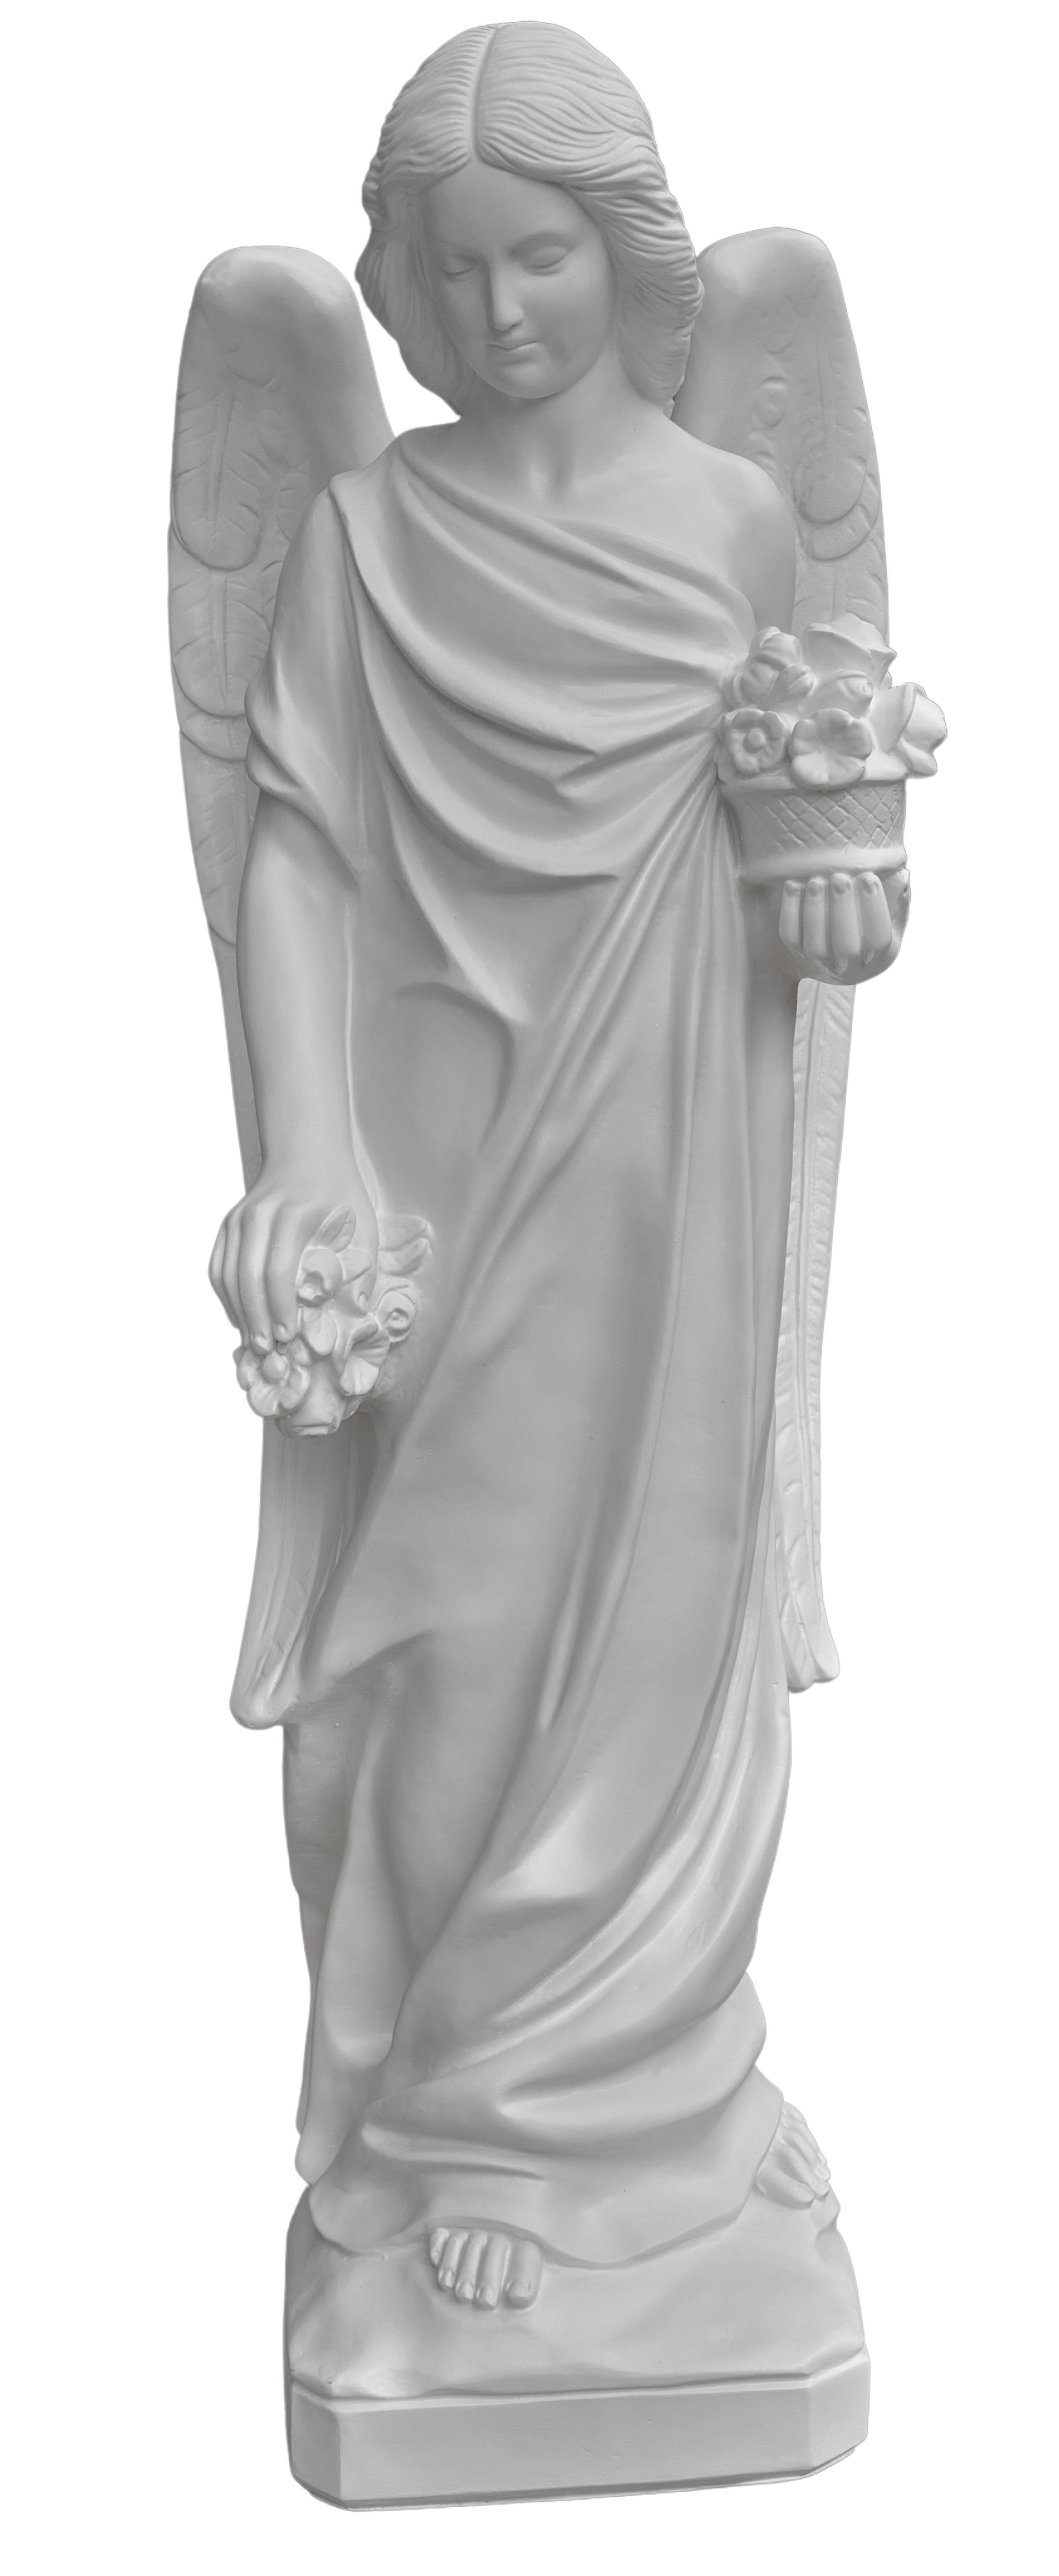 Anioł z kwiatami - Figura sakralna - 103 cm - R254